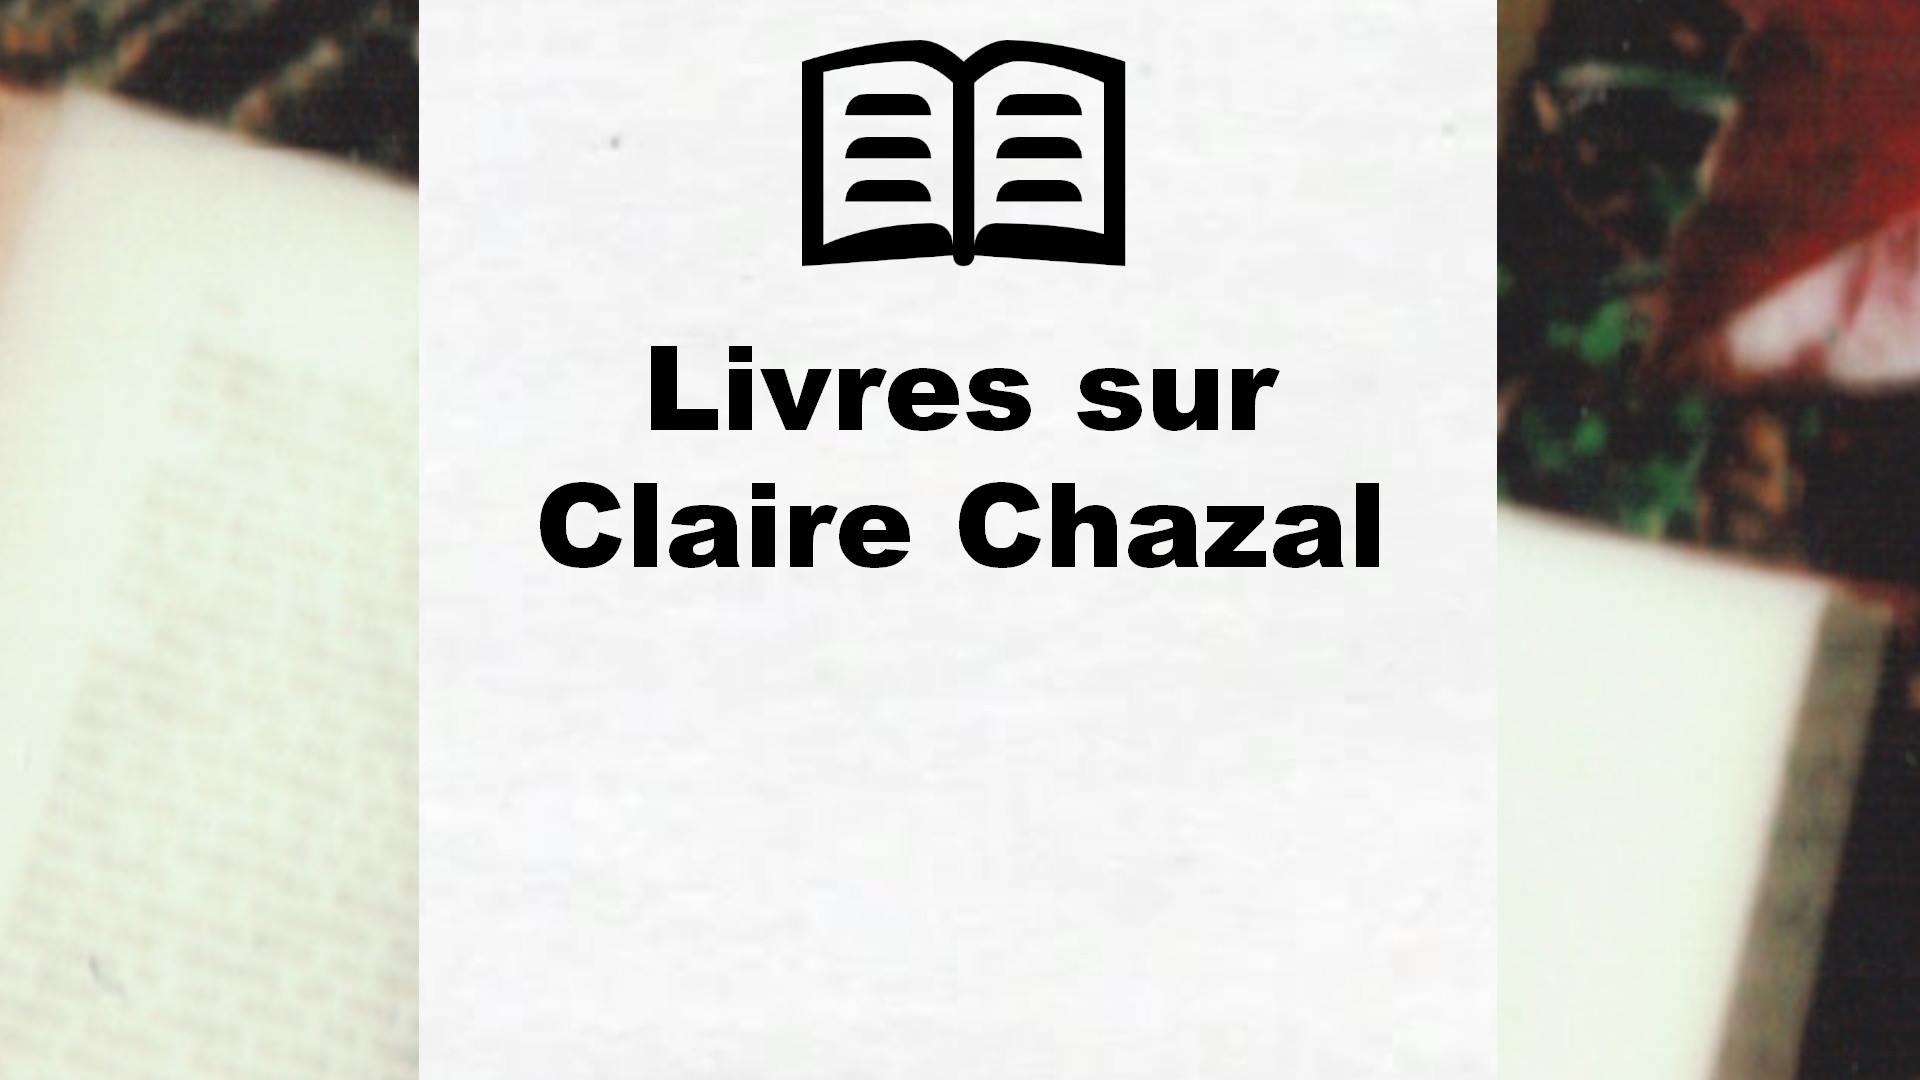 Livres sur Claire Chazal